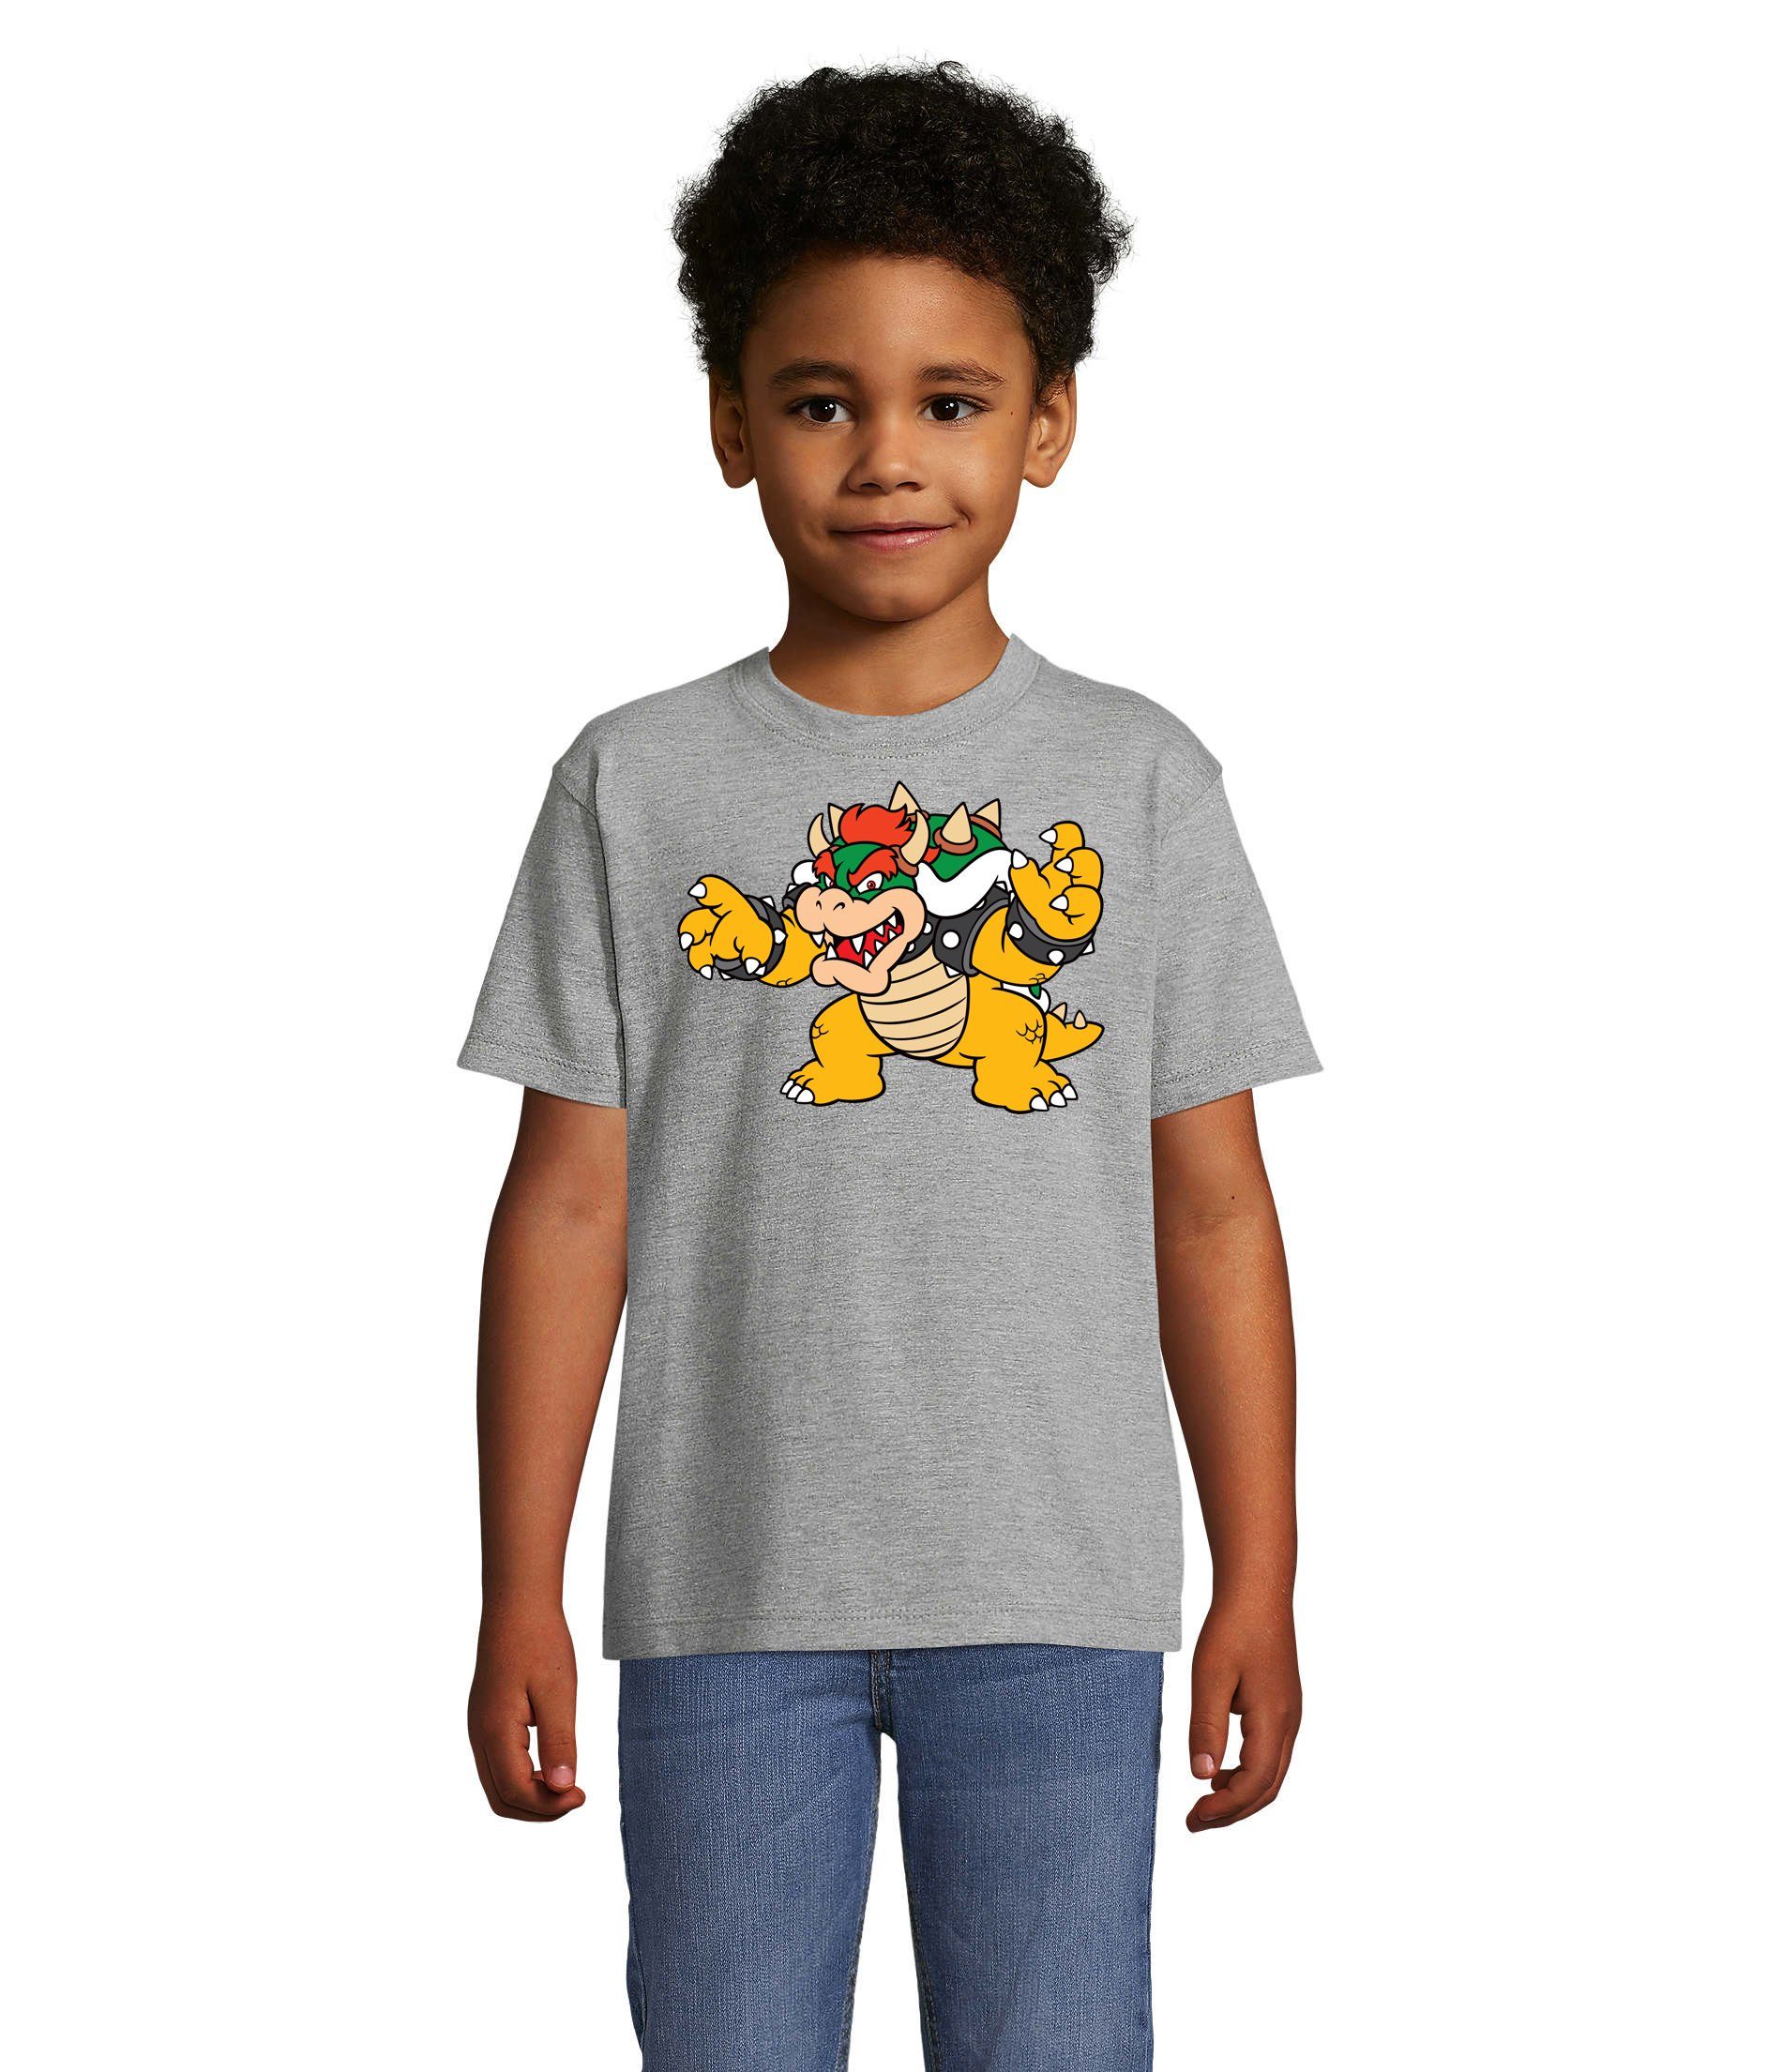 Yoshi Kinder Konsole Luigi Blondie T-Shirt Mario Bowser Brownie Nintendo Game Grau & Gamer